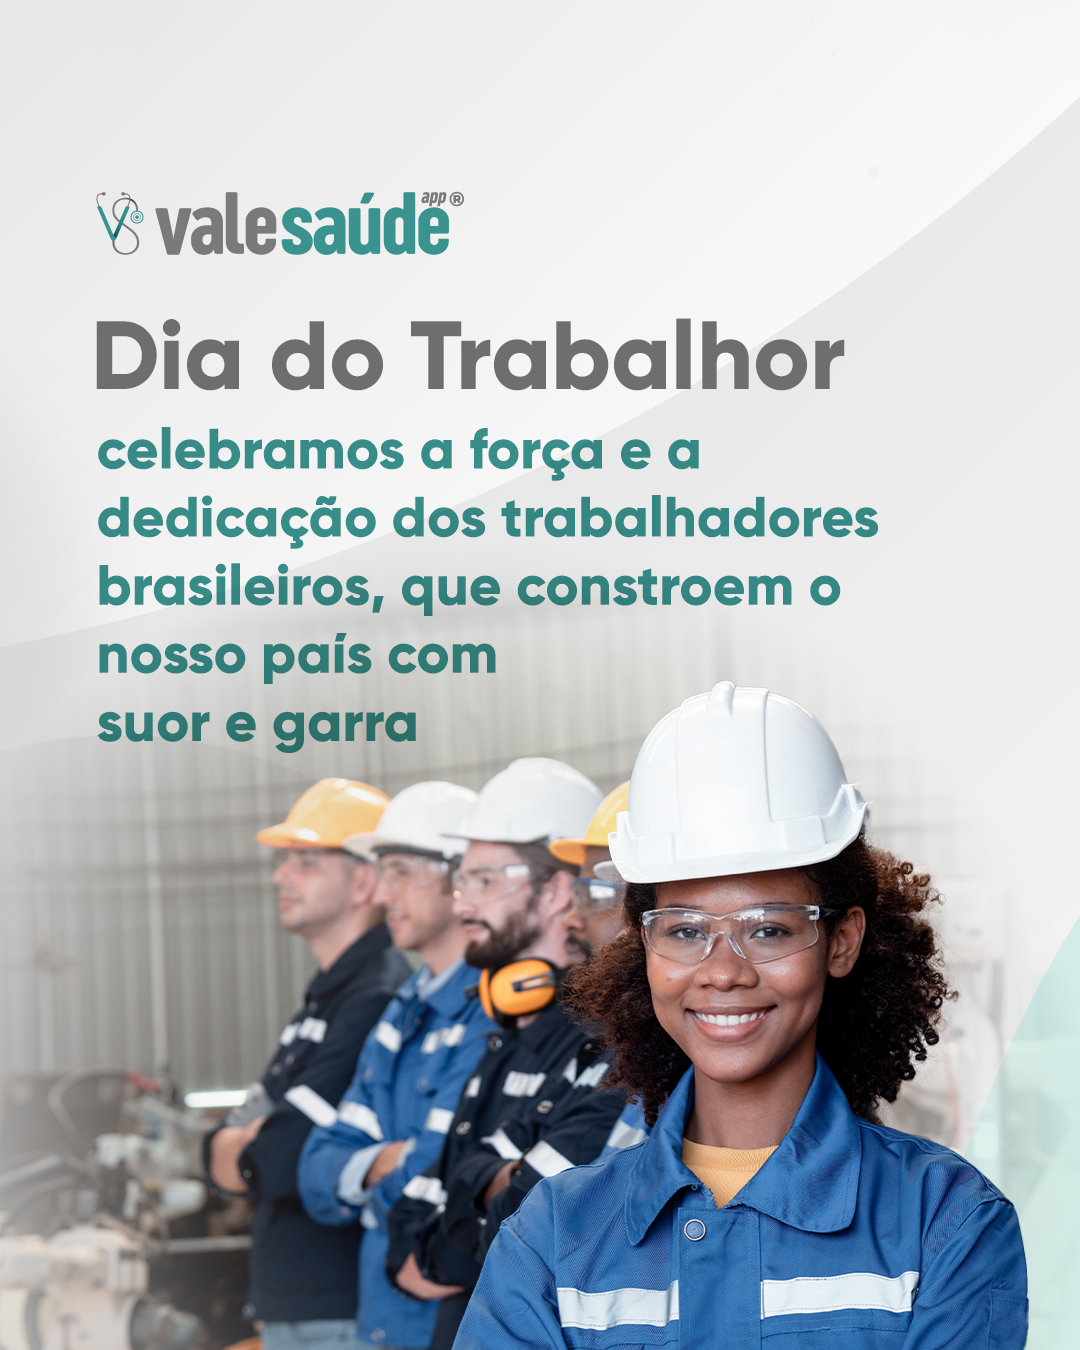 Dia do Trabalhador - celebramos a força e a dedicação dos trabalhadores brasileiros, que constroem o nosso país com suor e garra.